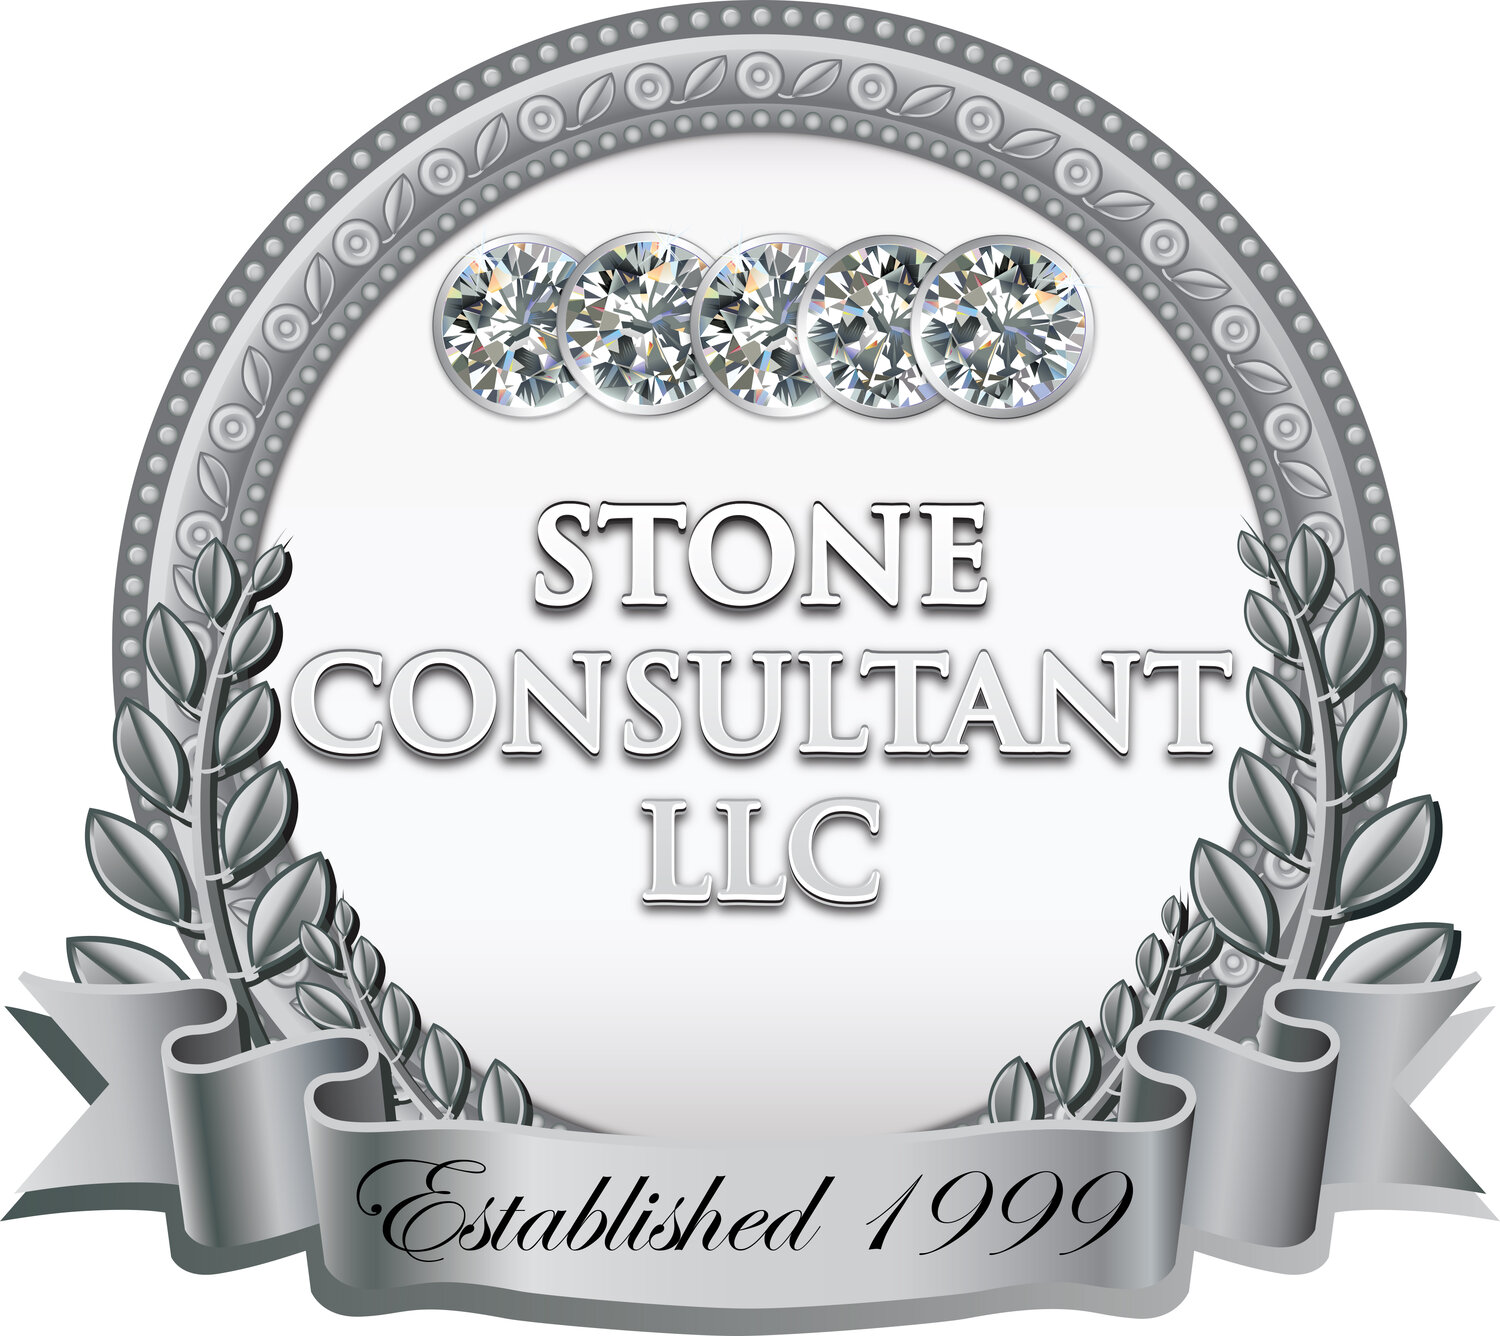 STONE CONSULTANT, LLC